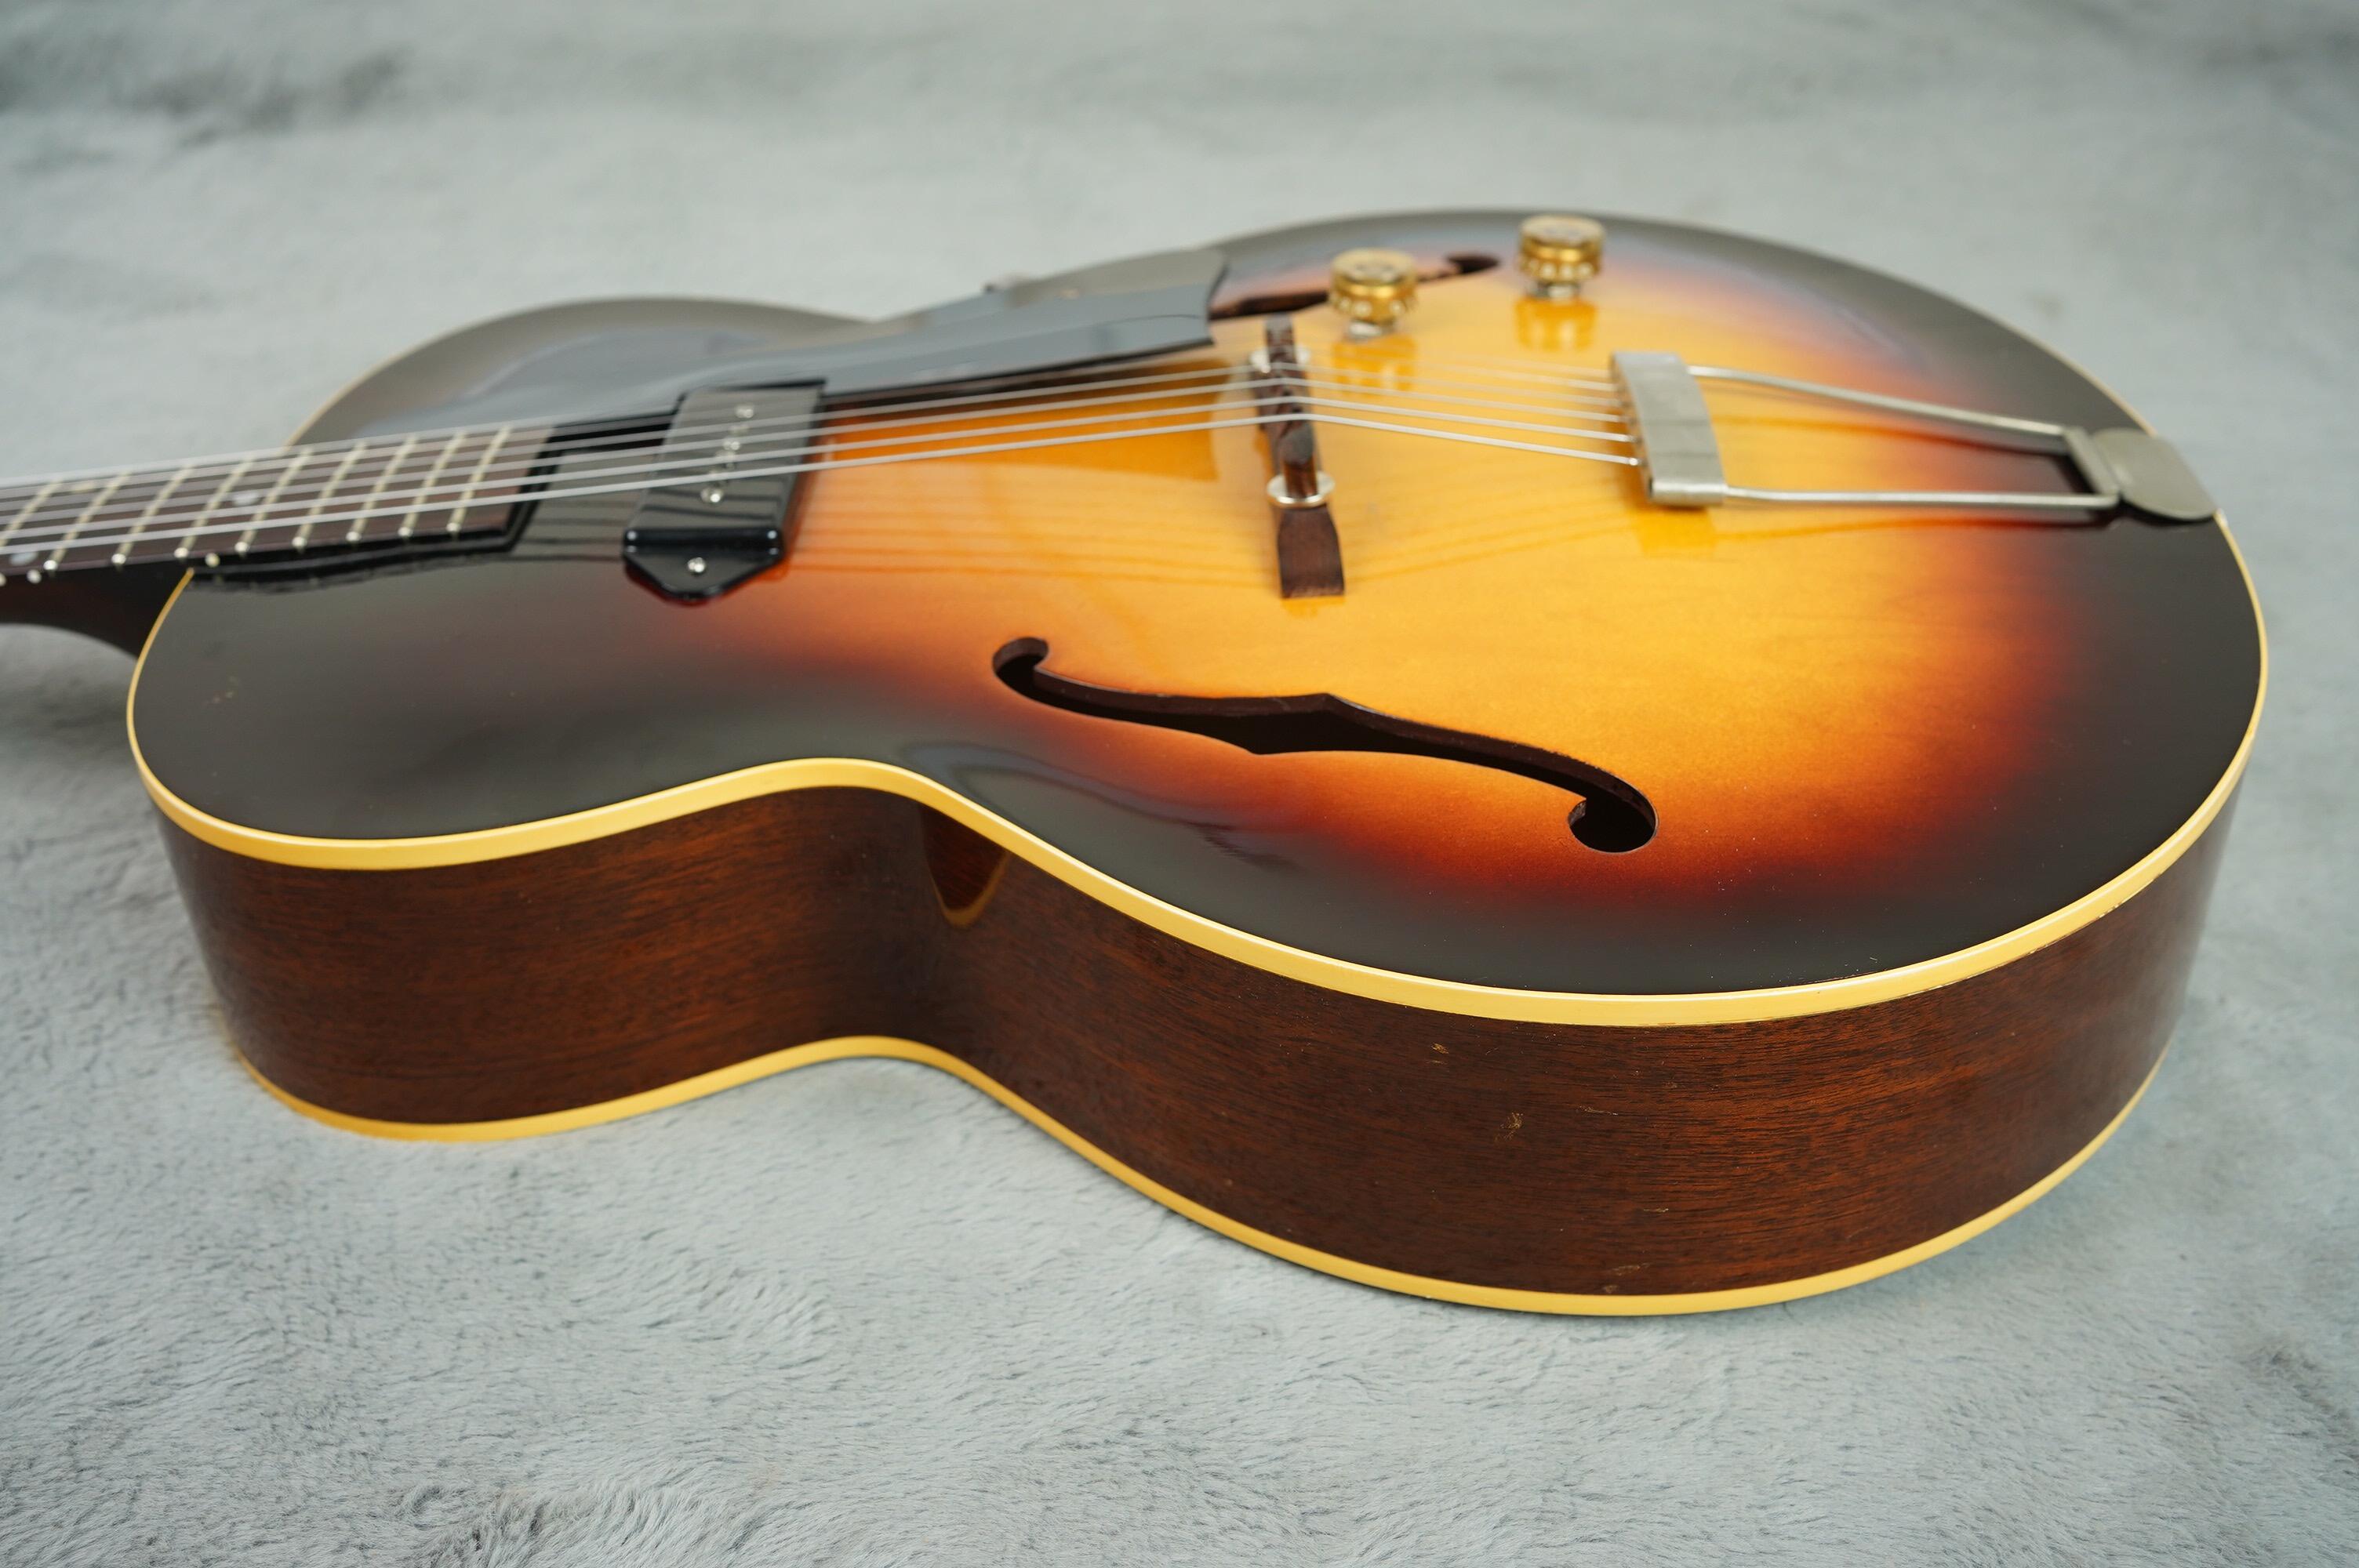 1955 Gibson ES-125